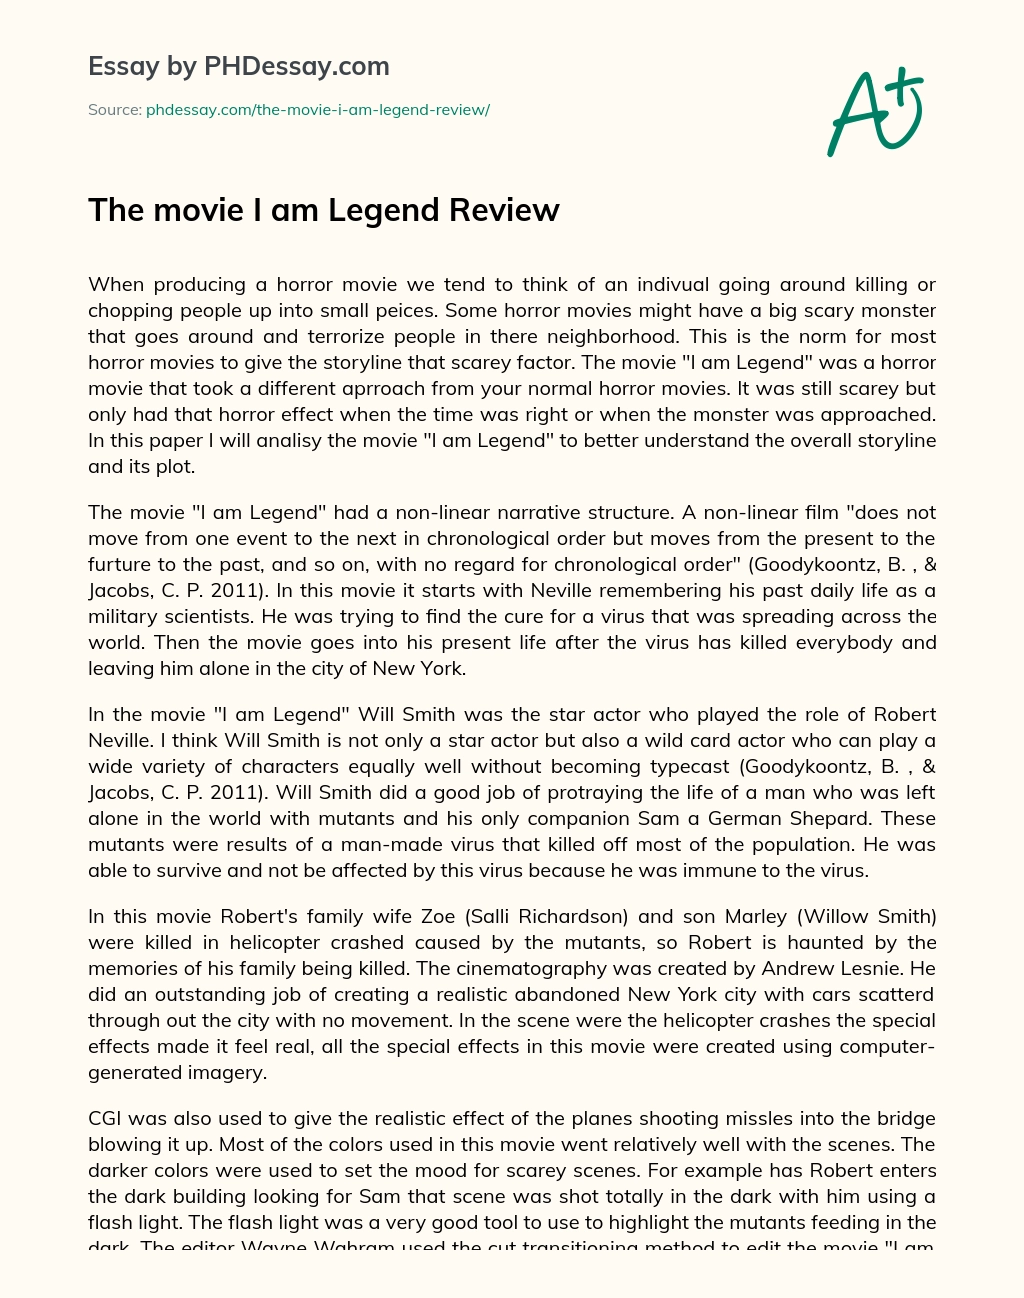 The movie I am Legend Review essay